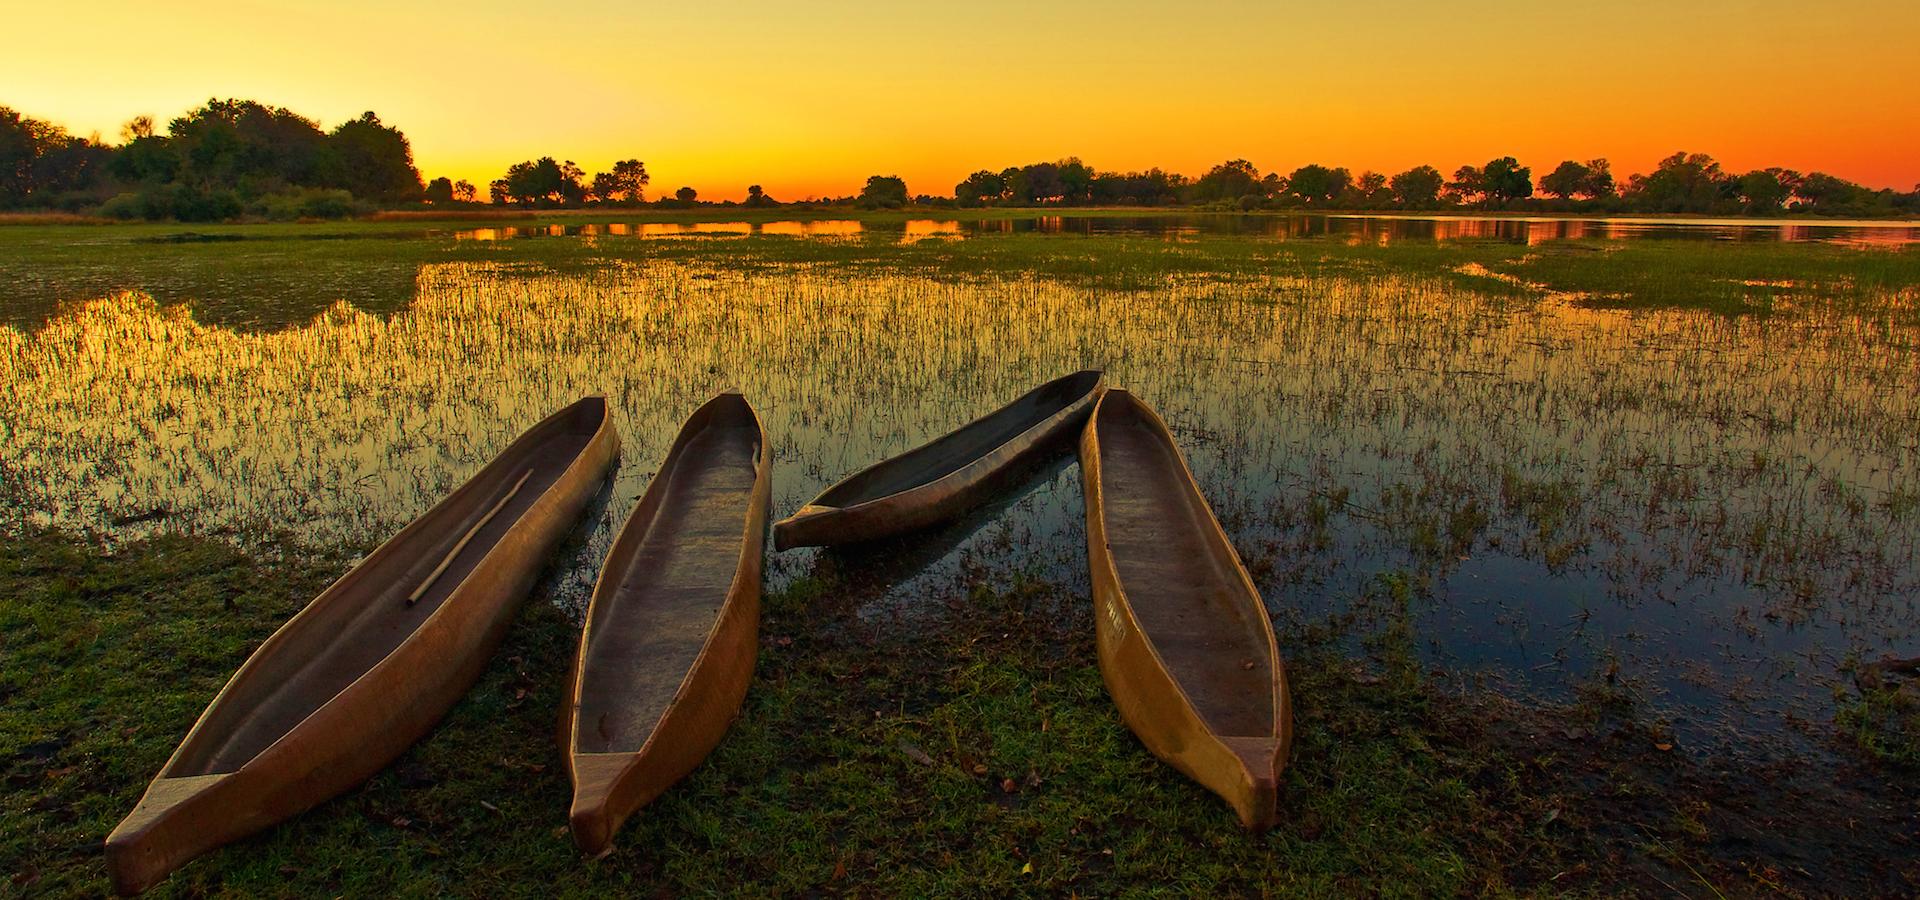 Sonnenaufgang im Okavango Delta: Im Vordergrund drei Mokoro, das klassische Fortbewegungsmittel im größten Binnendelta der Welt